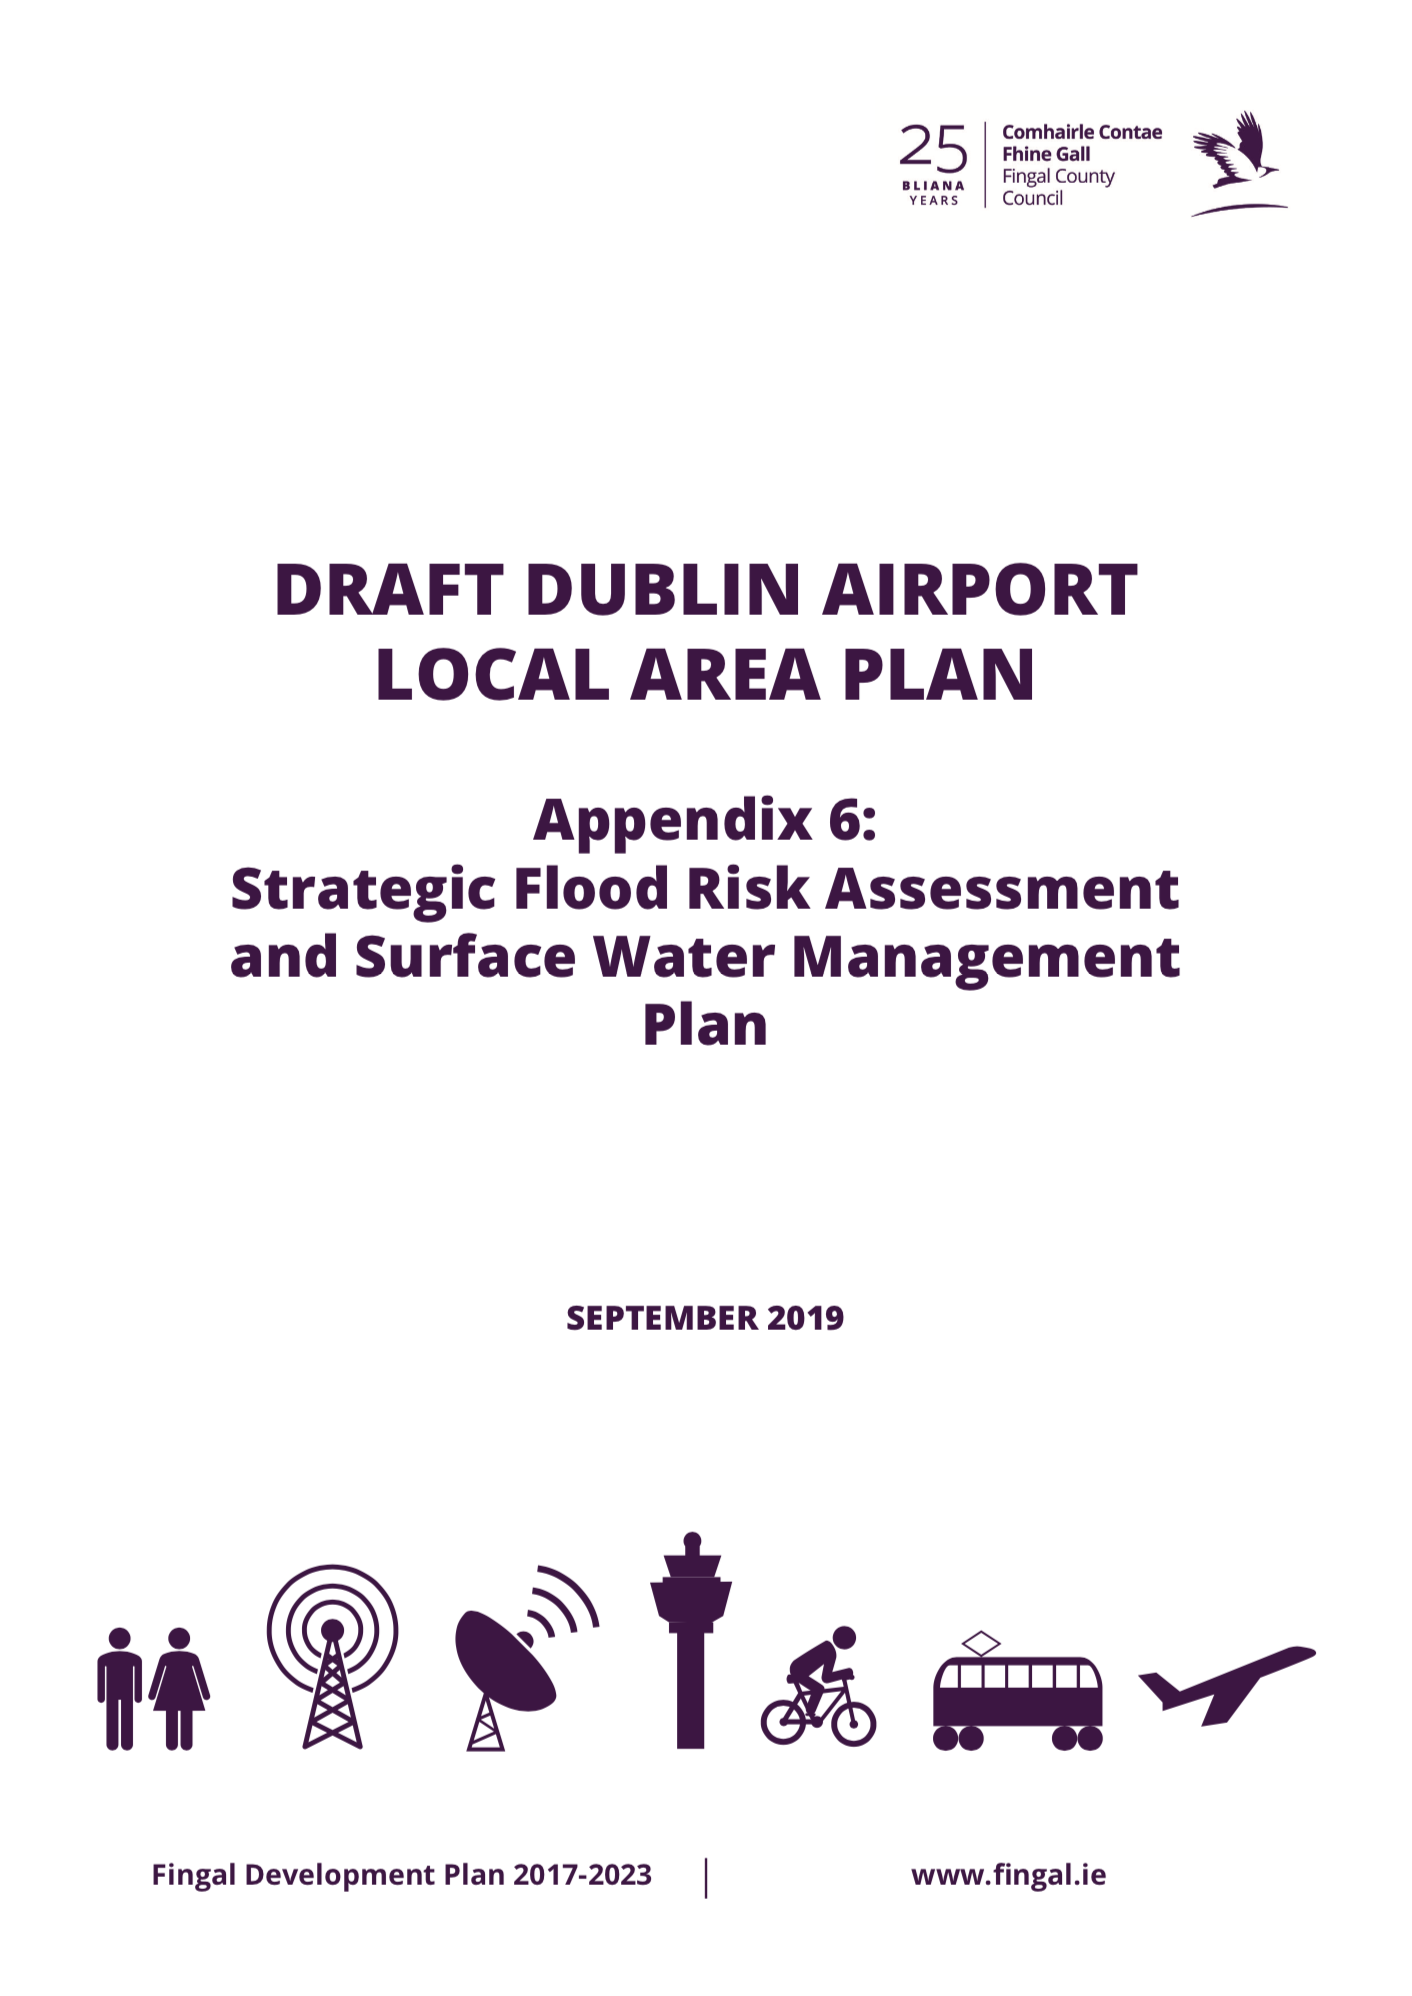 Appendix 6 - Strategic Flood Risk Assessment & SWMP